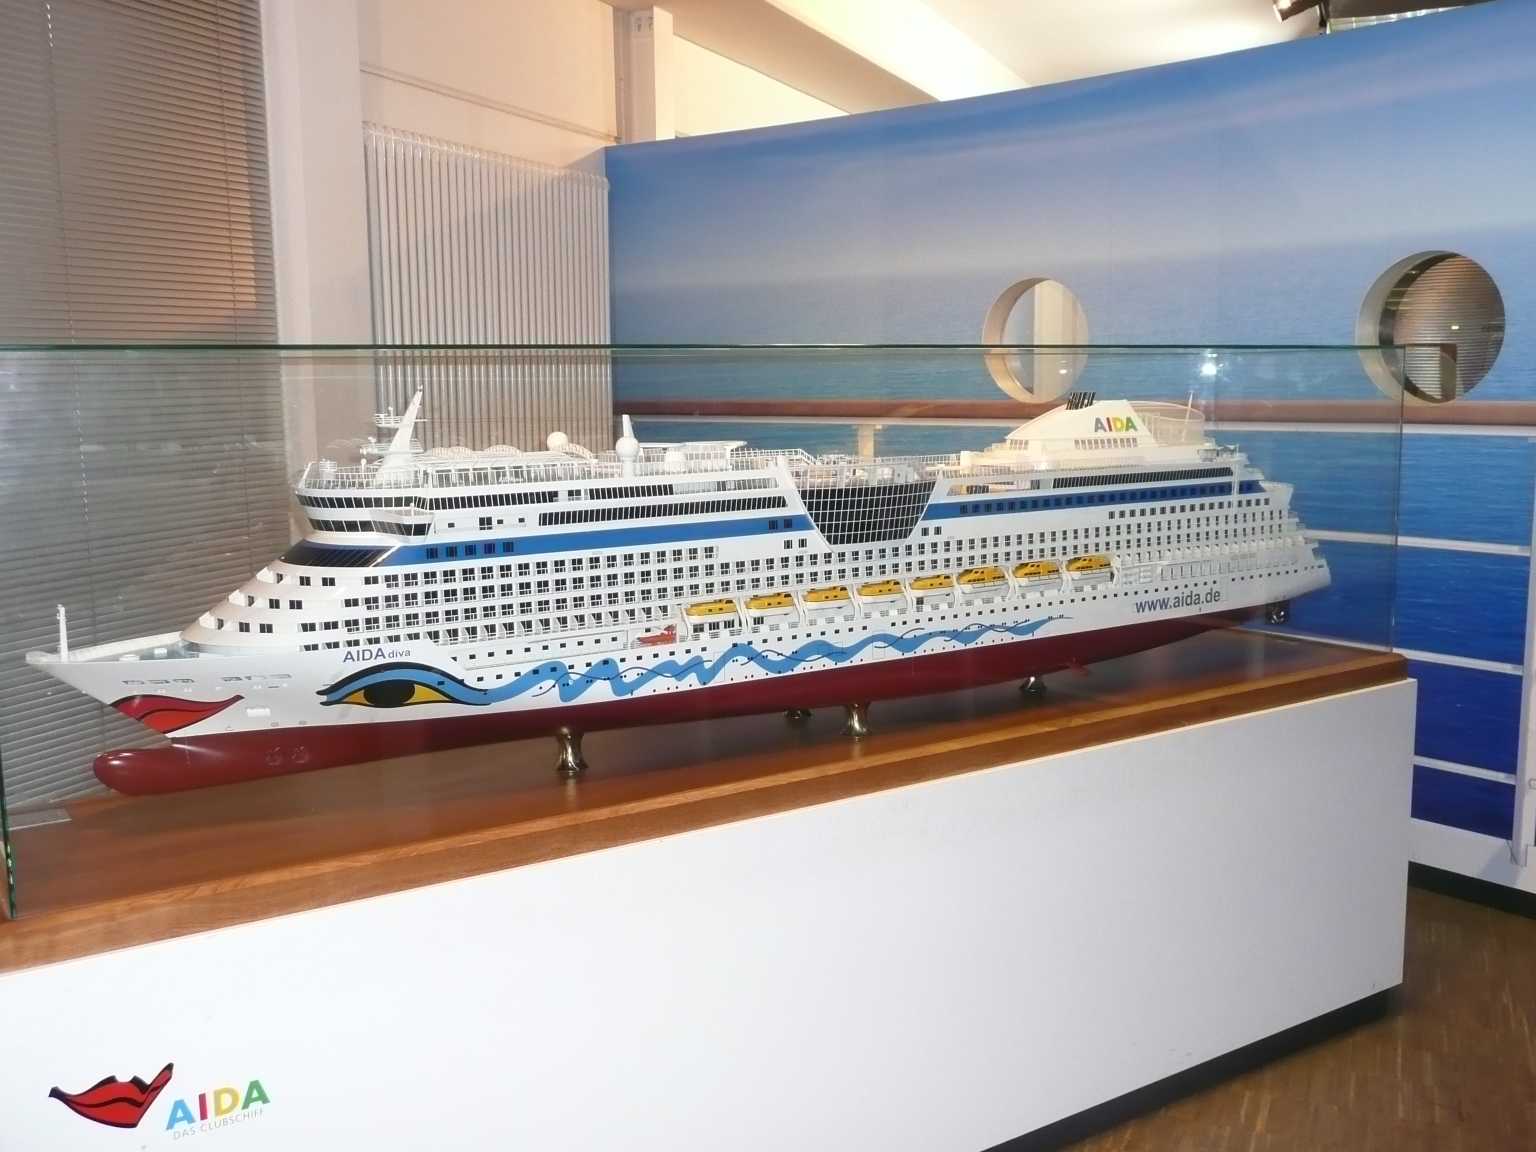 Modell eines der vielen riesigen Luxus-Kreuzfahrtschiffe.